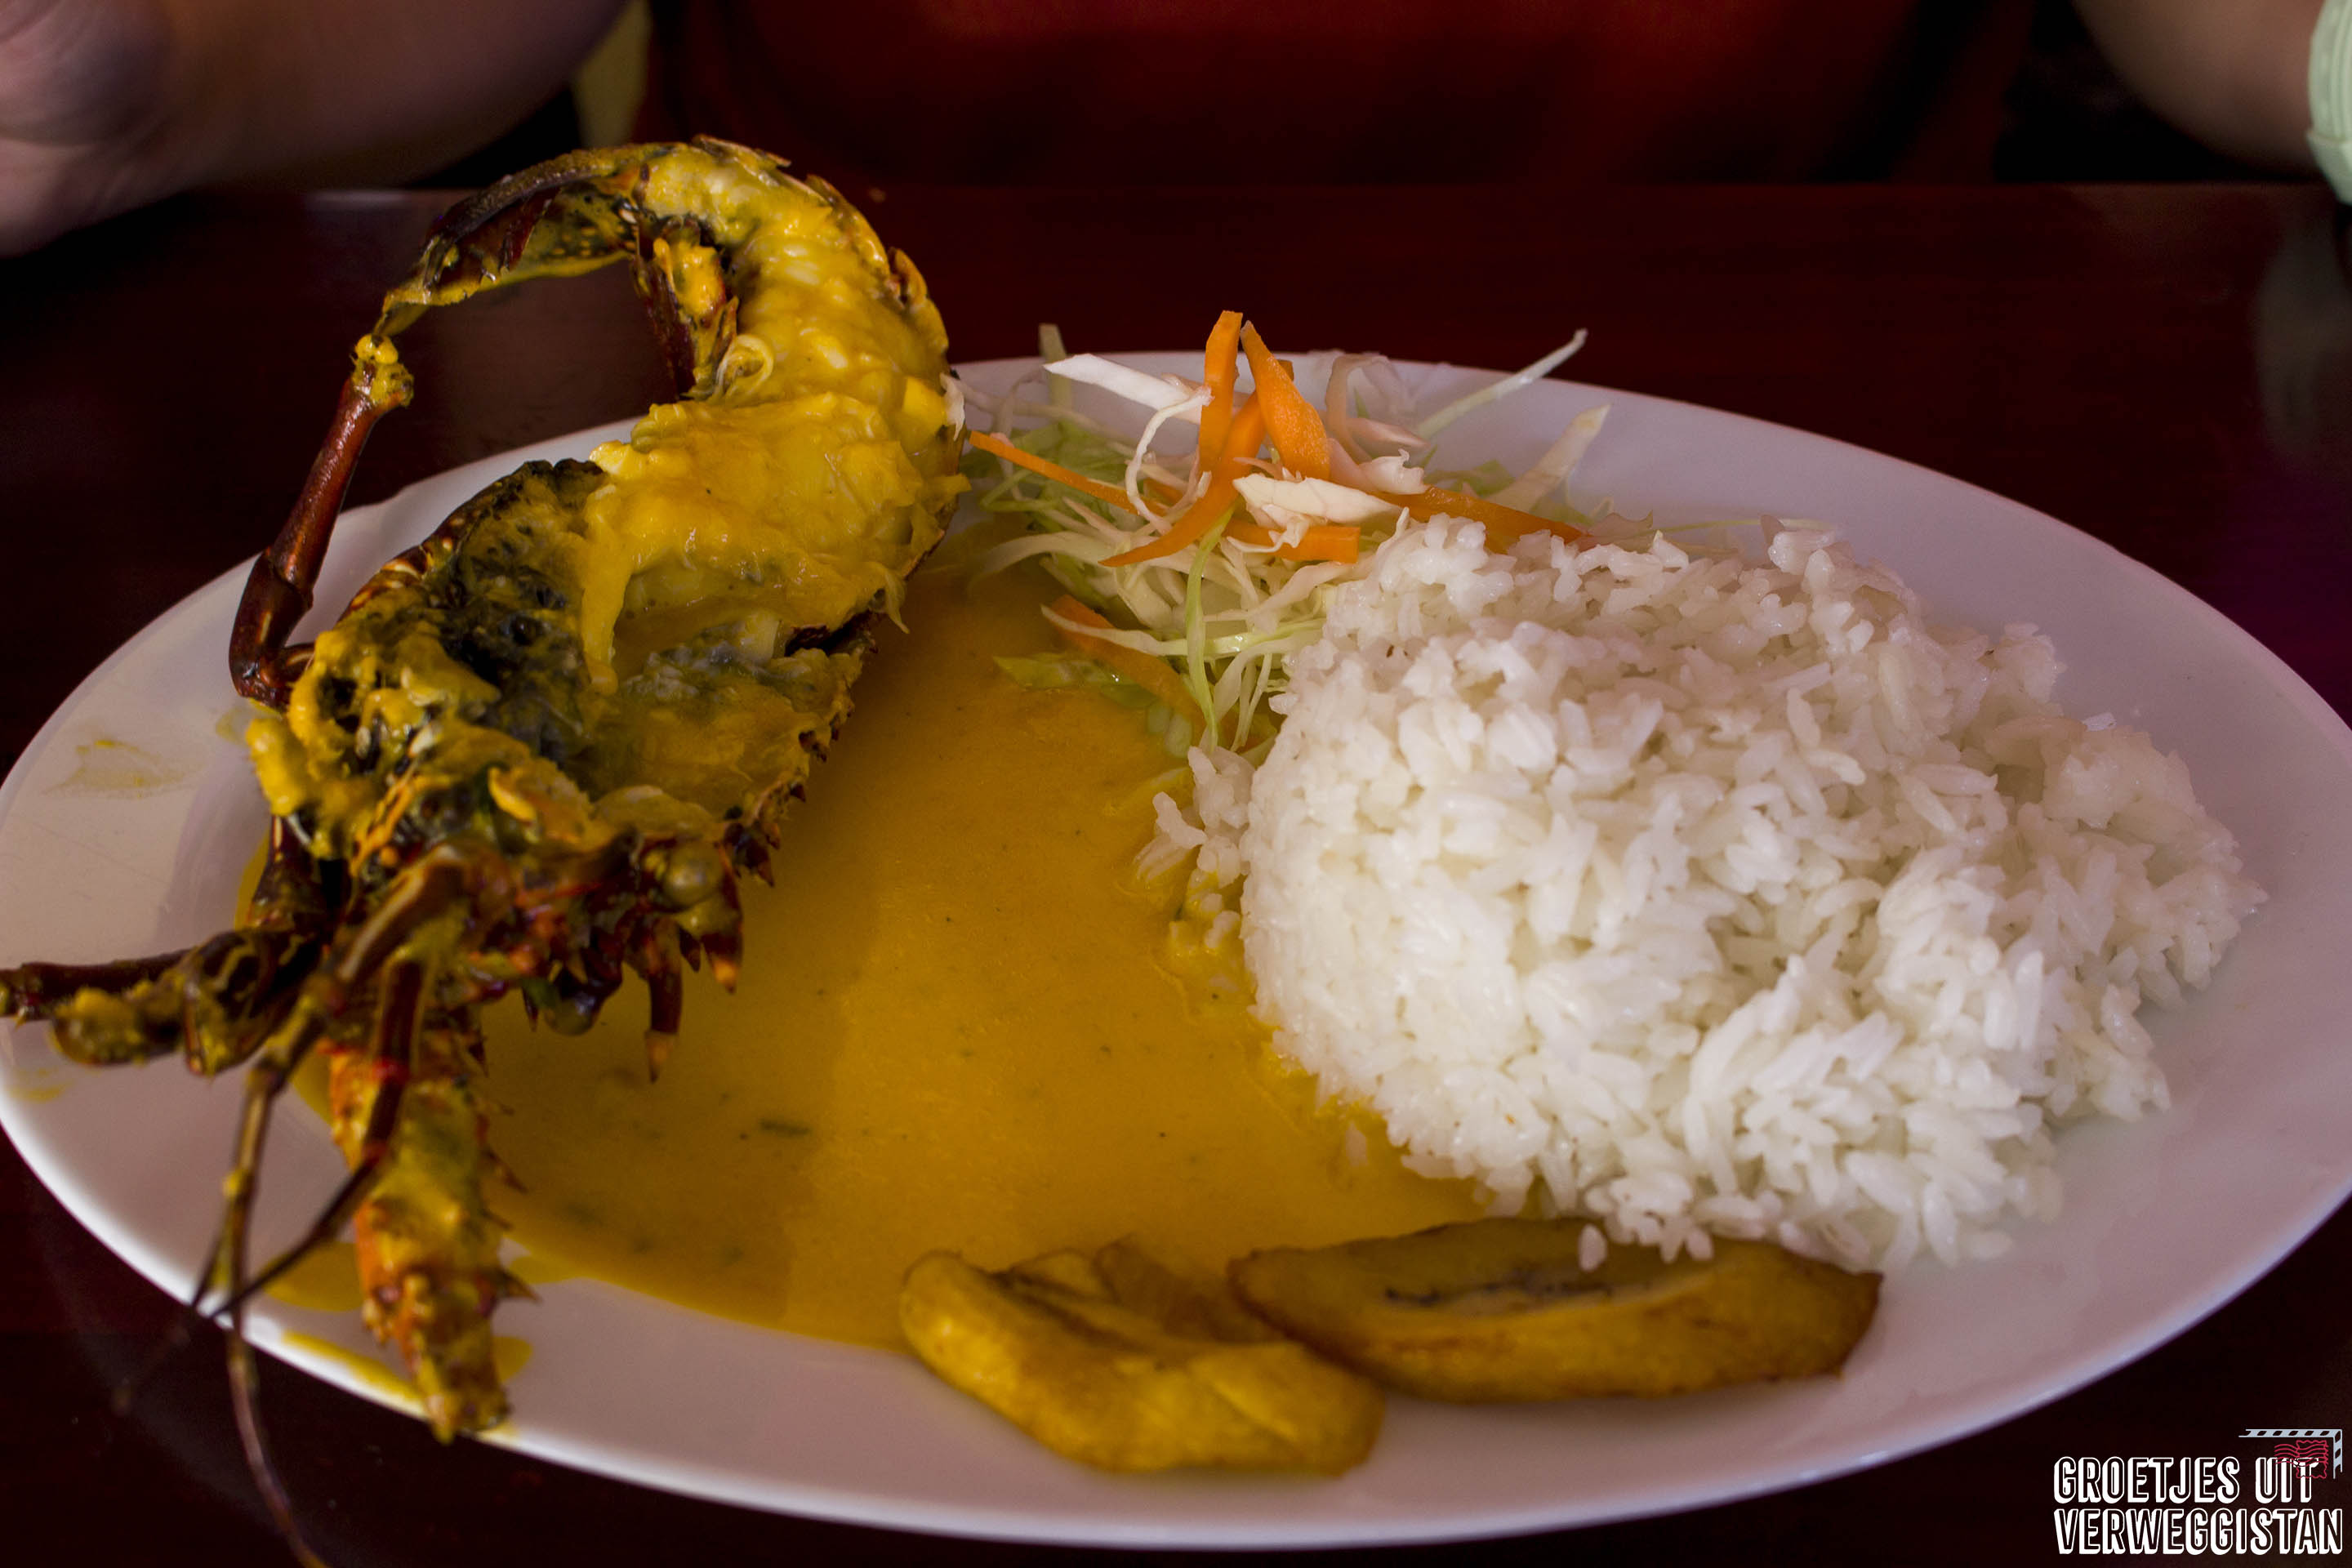 Een kreeft in gele saus met rijst: goedkoop eten op Santa Cruz op Charles Binford.